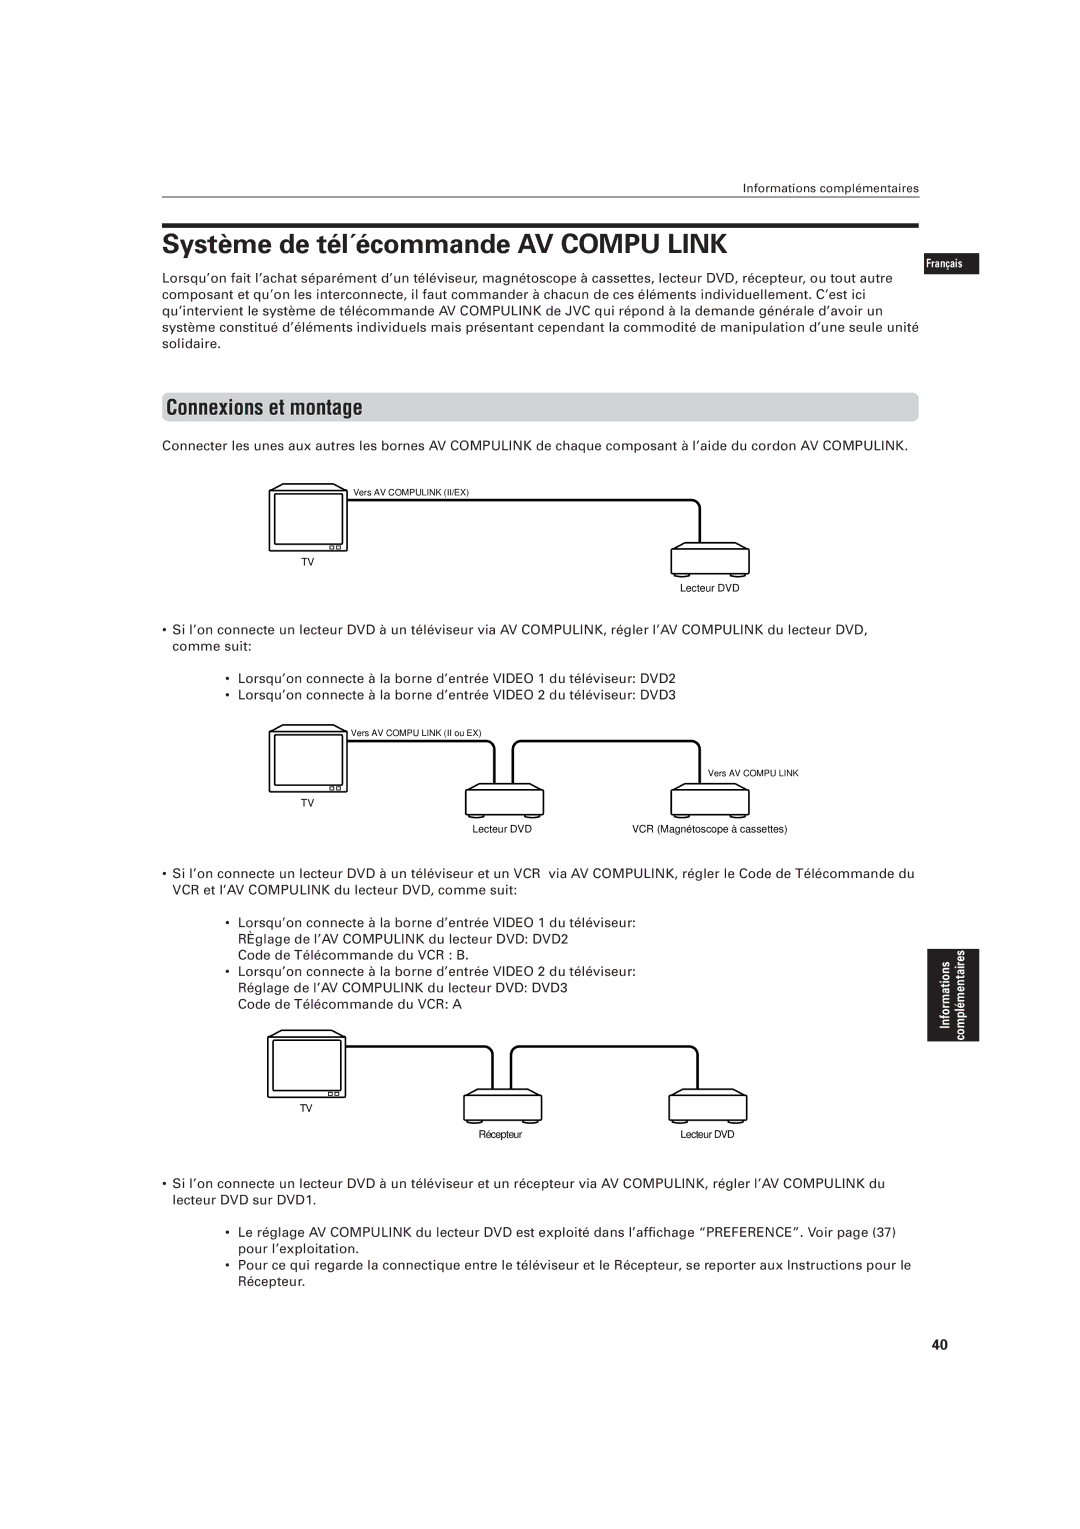 JVC LVT0336-003A manual Système de tél´écommande AV Compu Link, Connexions et montage 